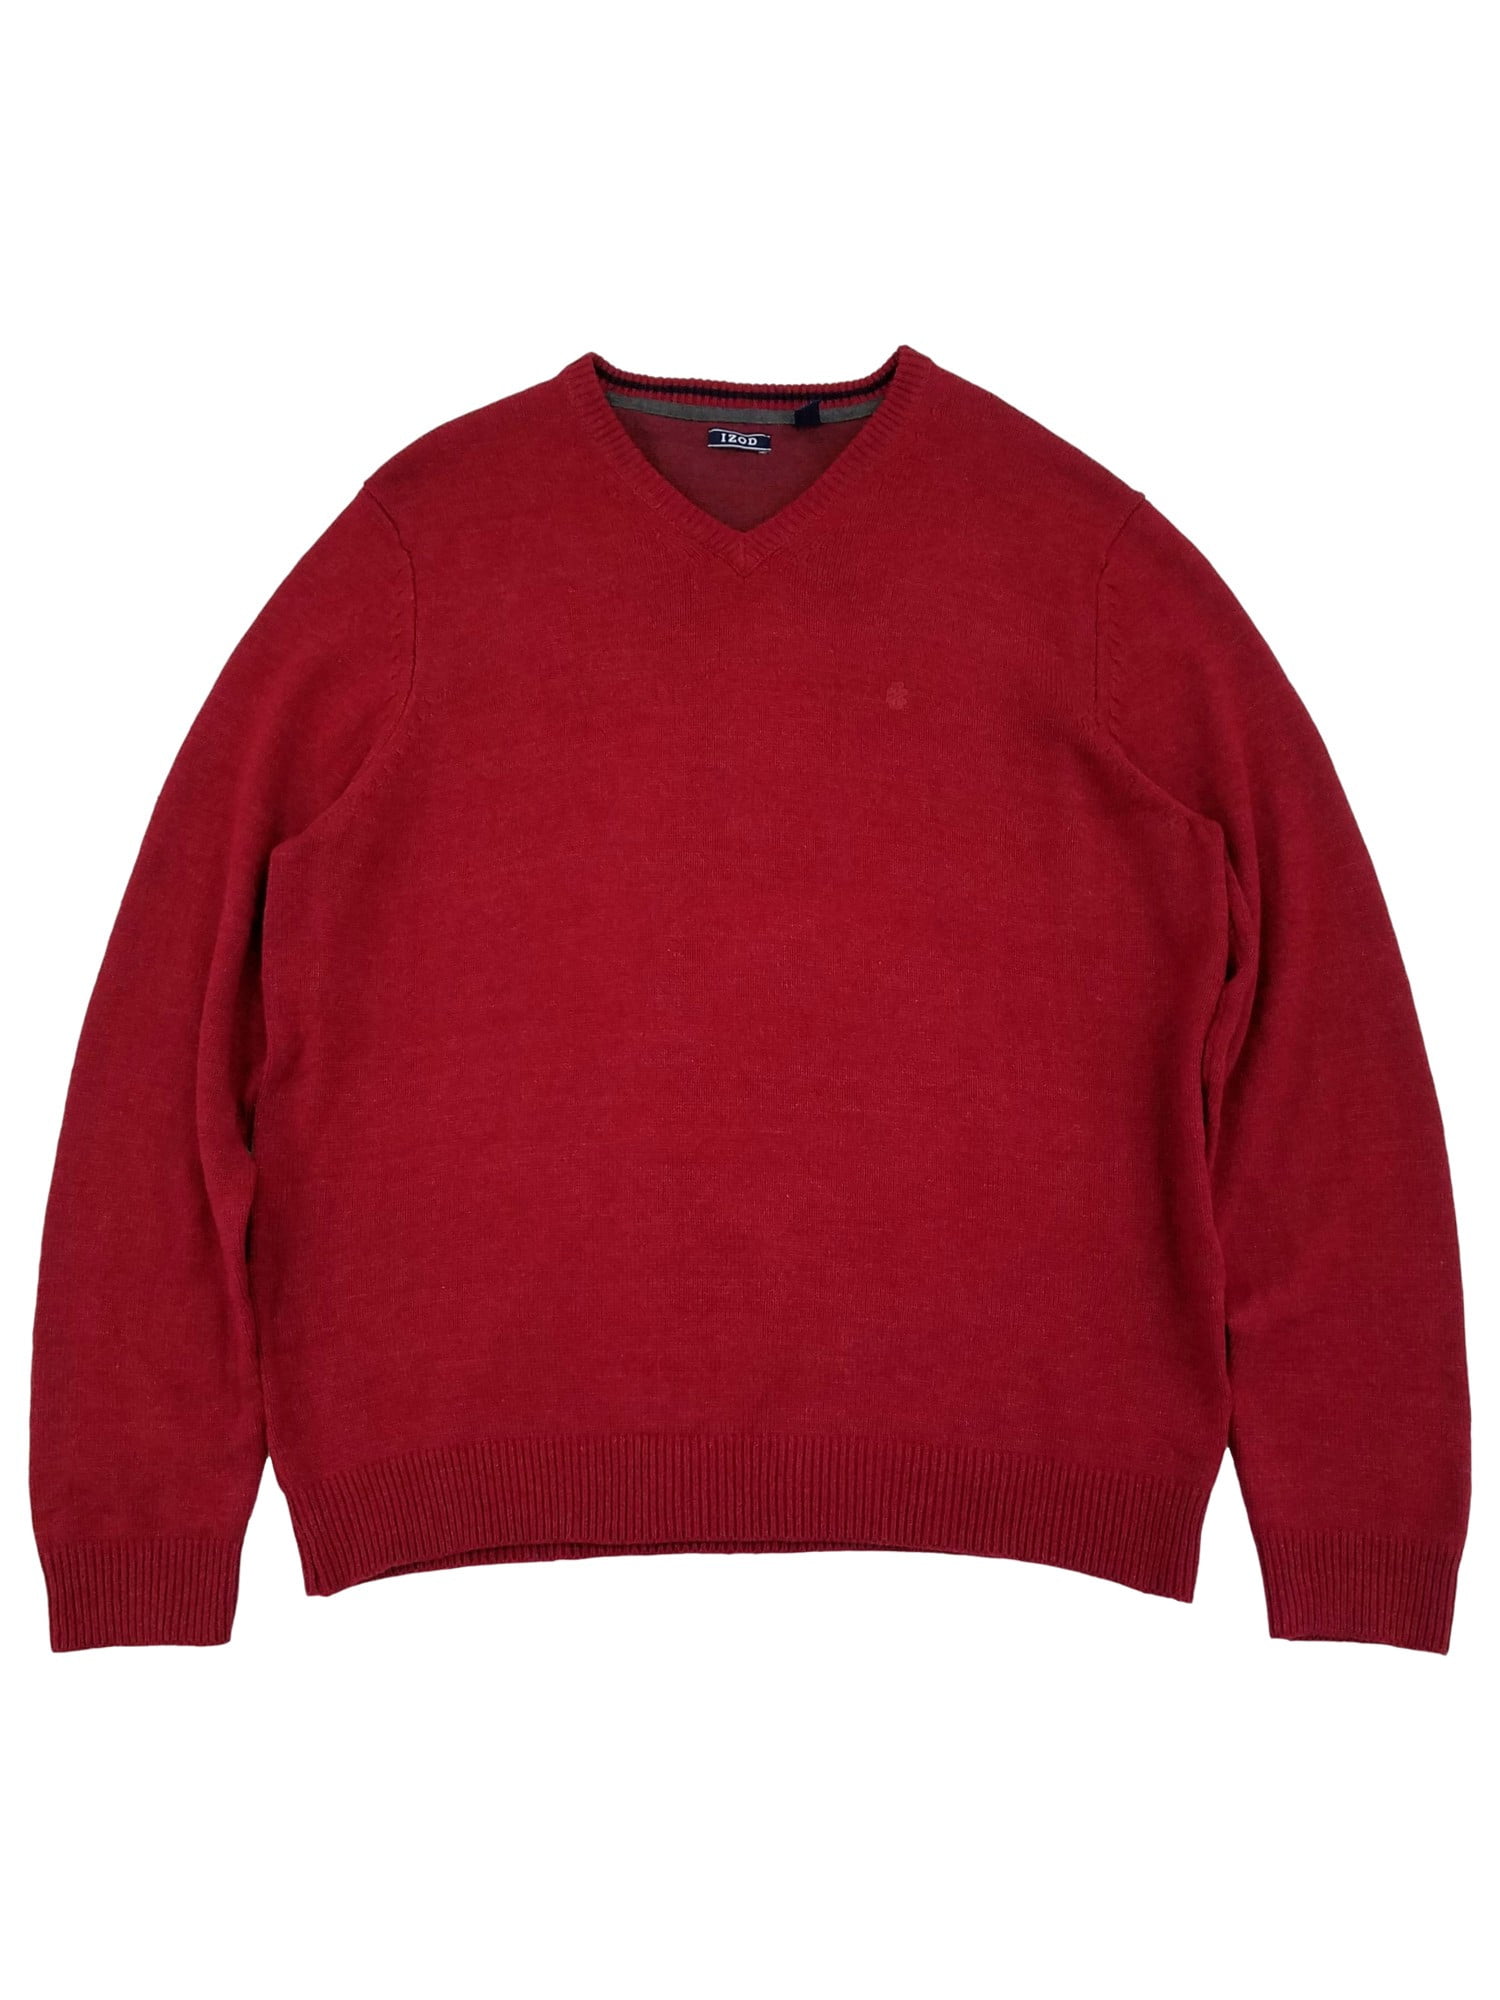 IZOD Mens Biking Red Premium Essentials Lightweight V-Neck Sweater